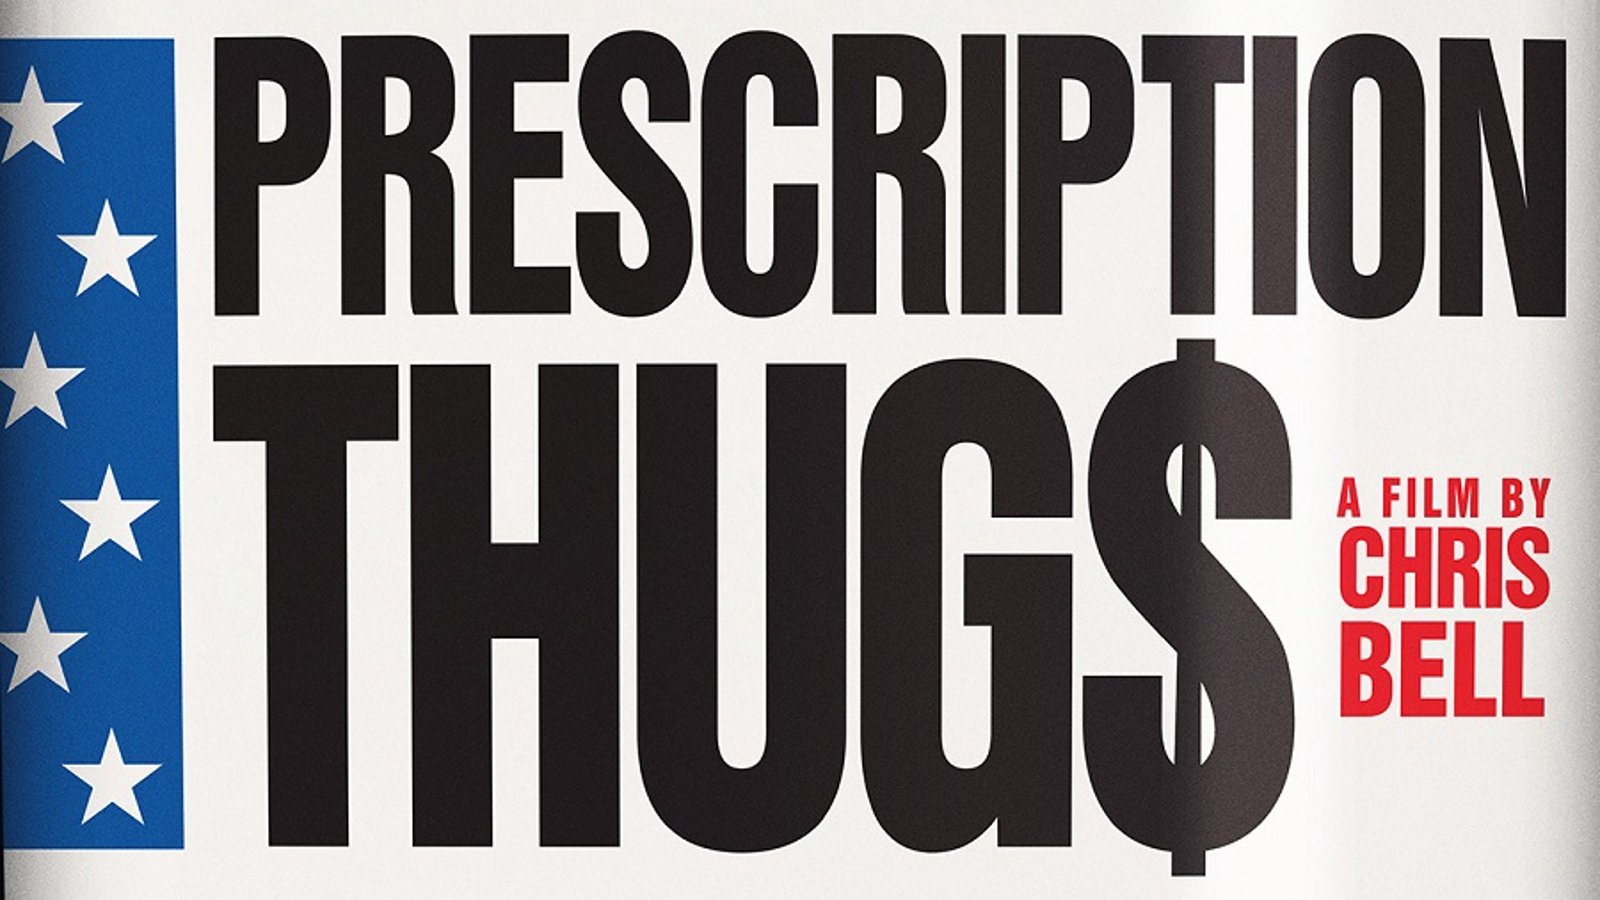 Prescription Thugs - America's Addiction to Prescription Drugs